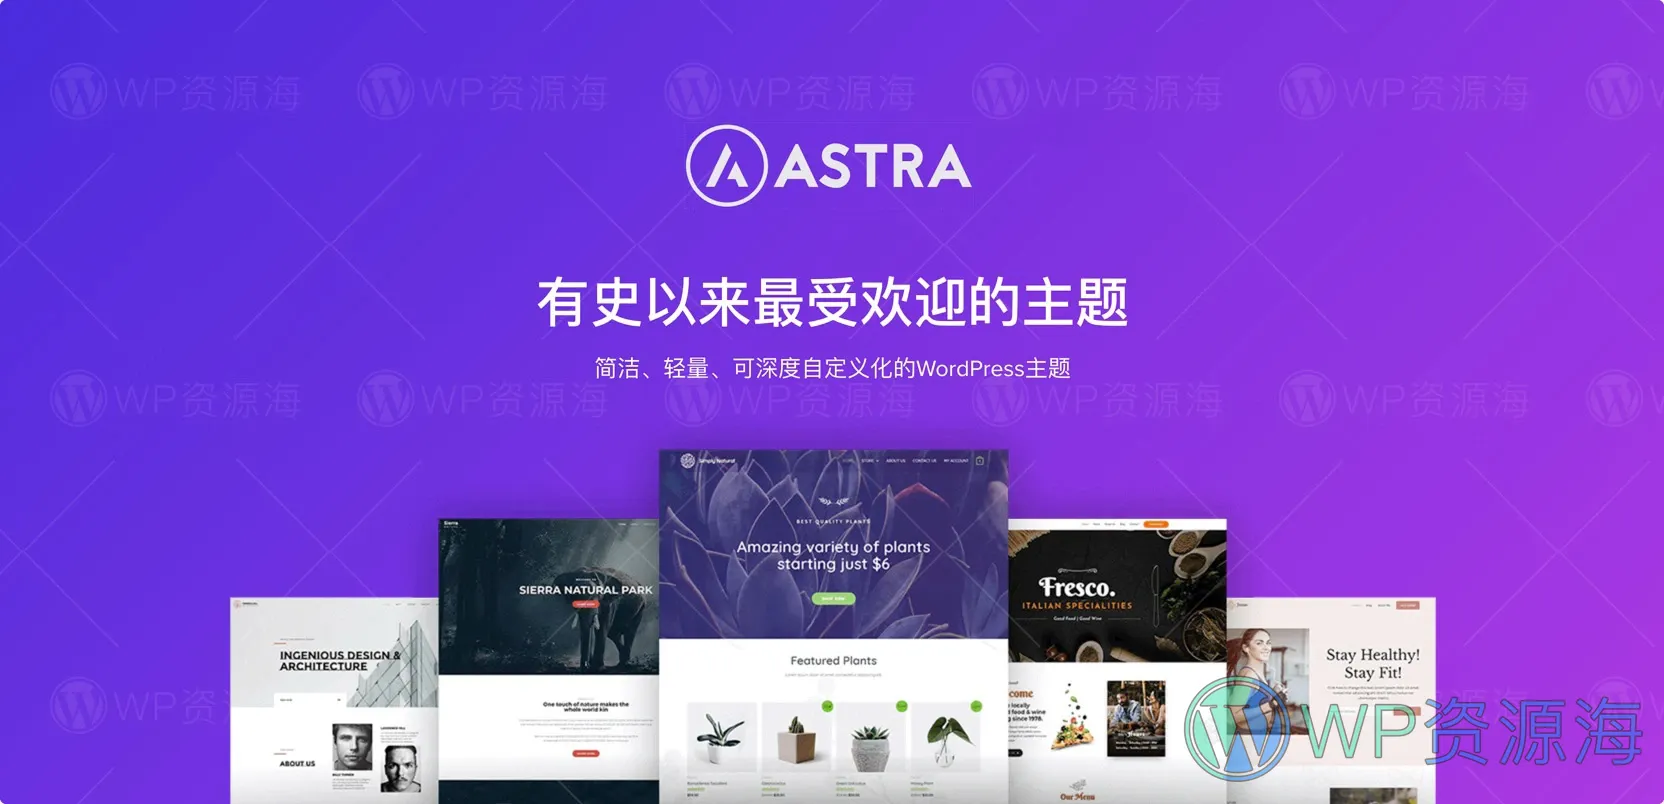 【正版】Astra Growth Bundle 全套正版key激活终身永久授权支持在线更新插图-WordPress资源海